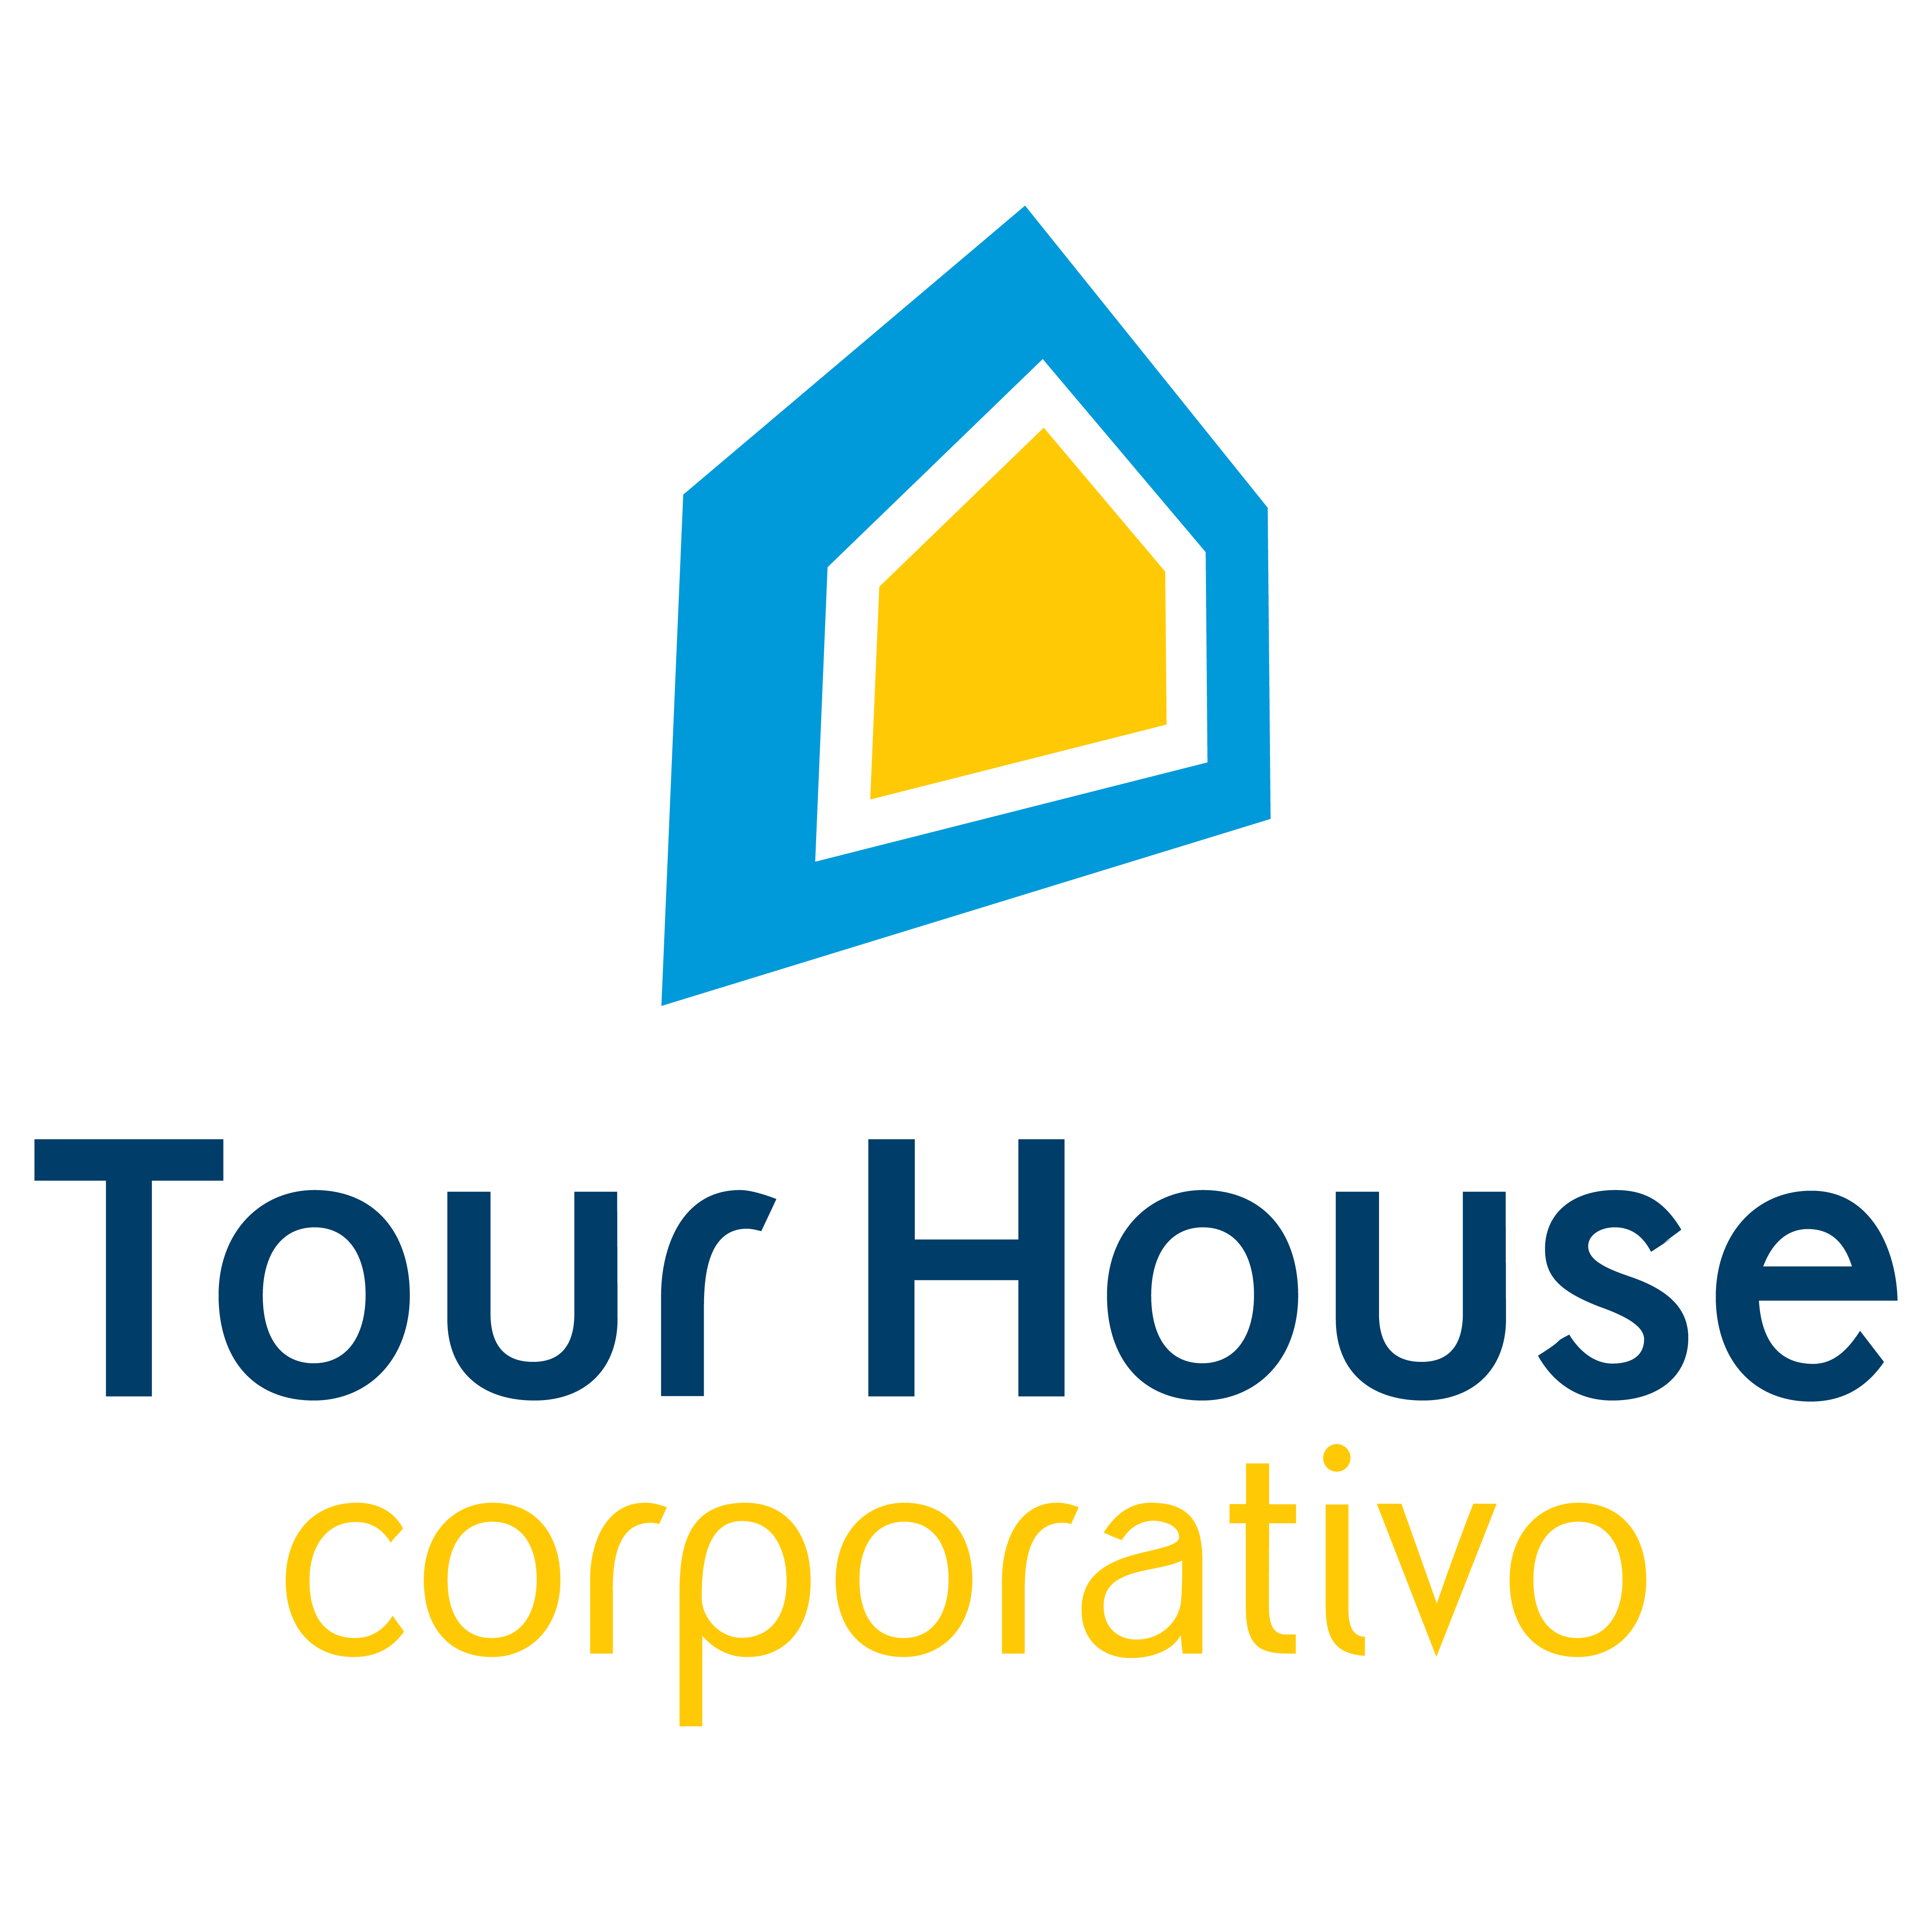 Tour House Corporativo